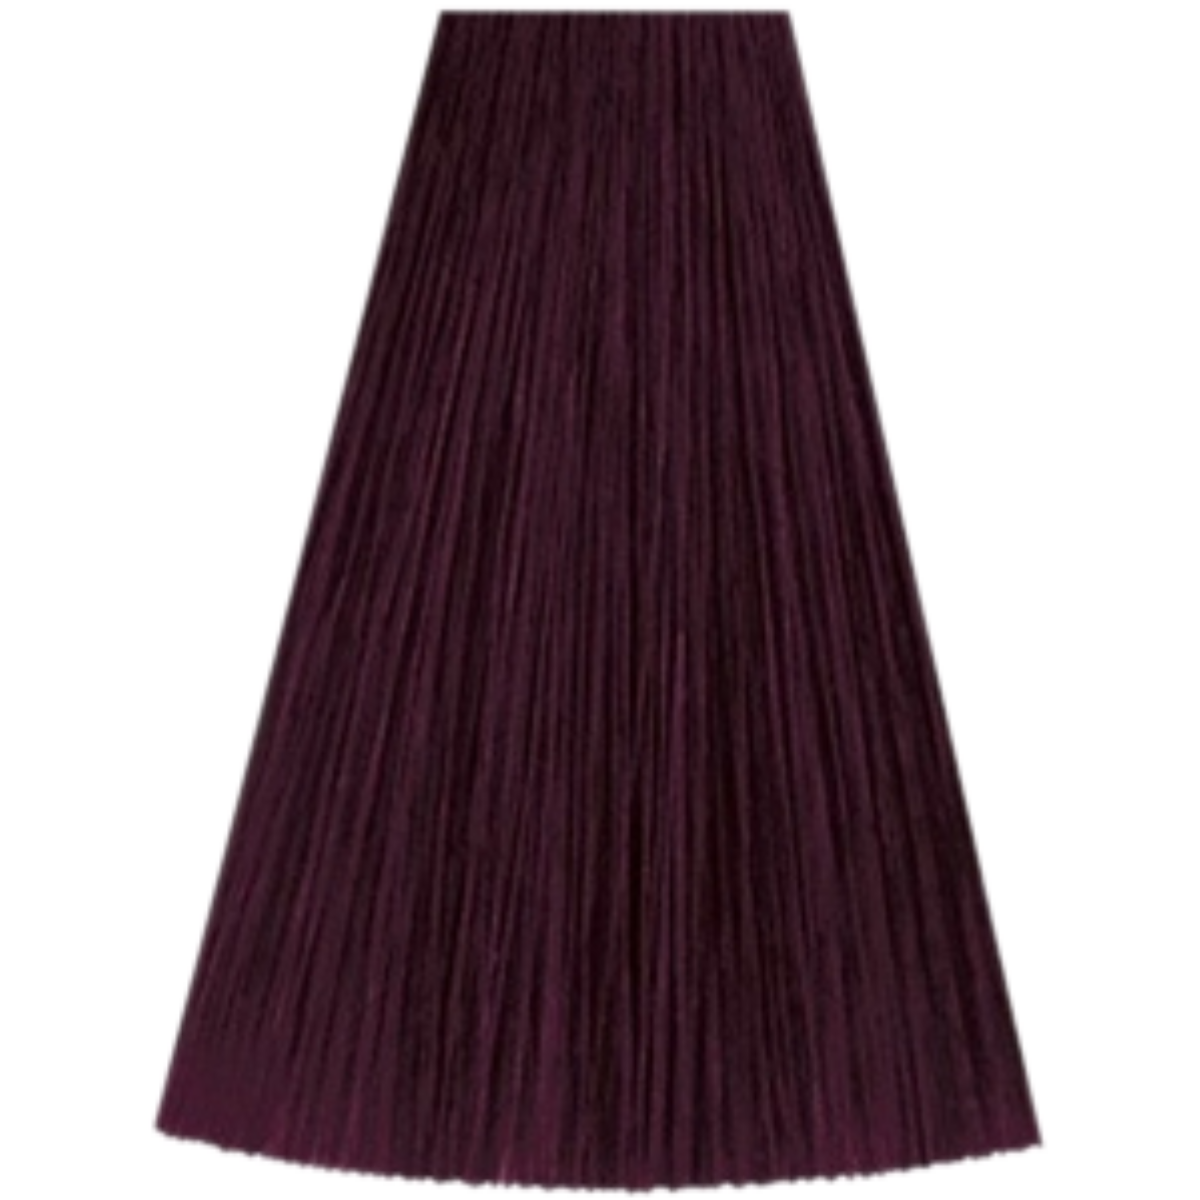 צבע שיער 4/65 MEDIUM BROWN VIOLET MAHOGANY קאדוס KADUS צבע לשיער 60 גרם